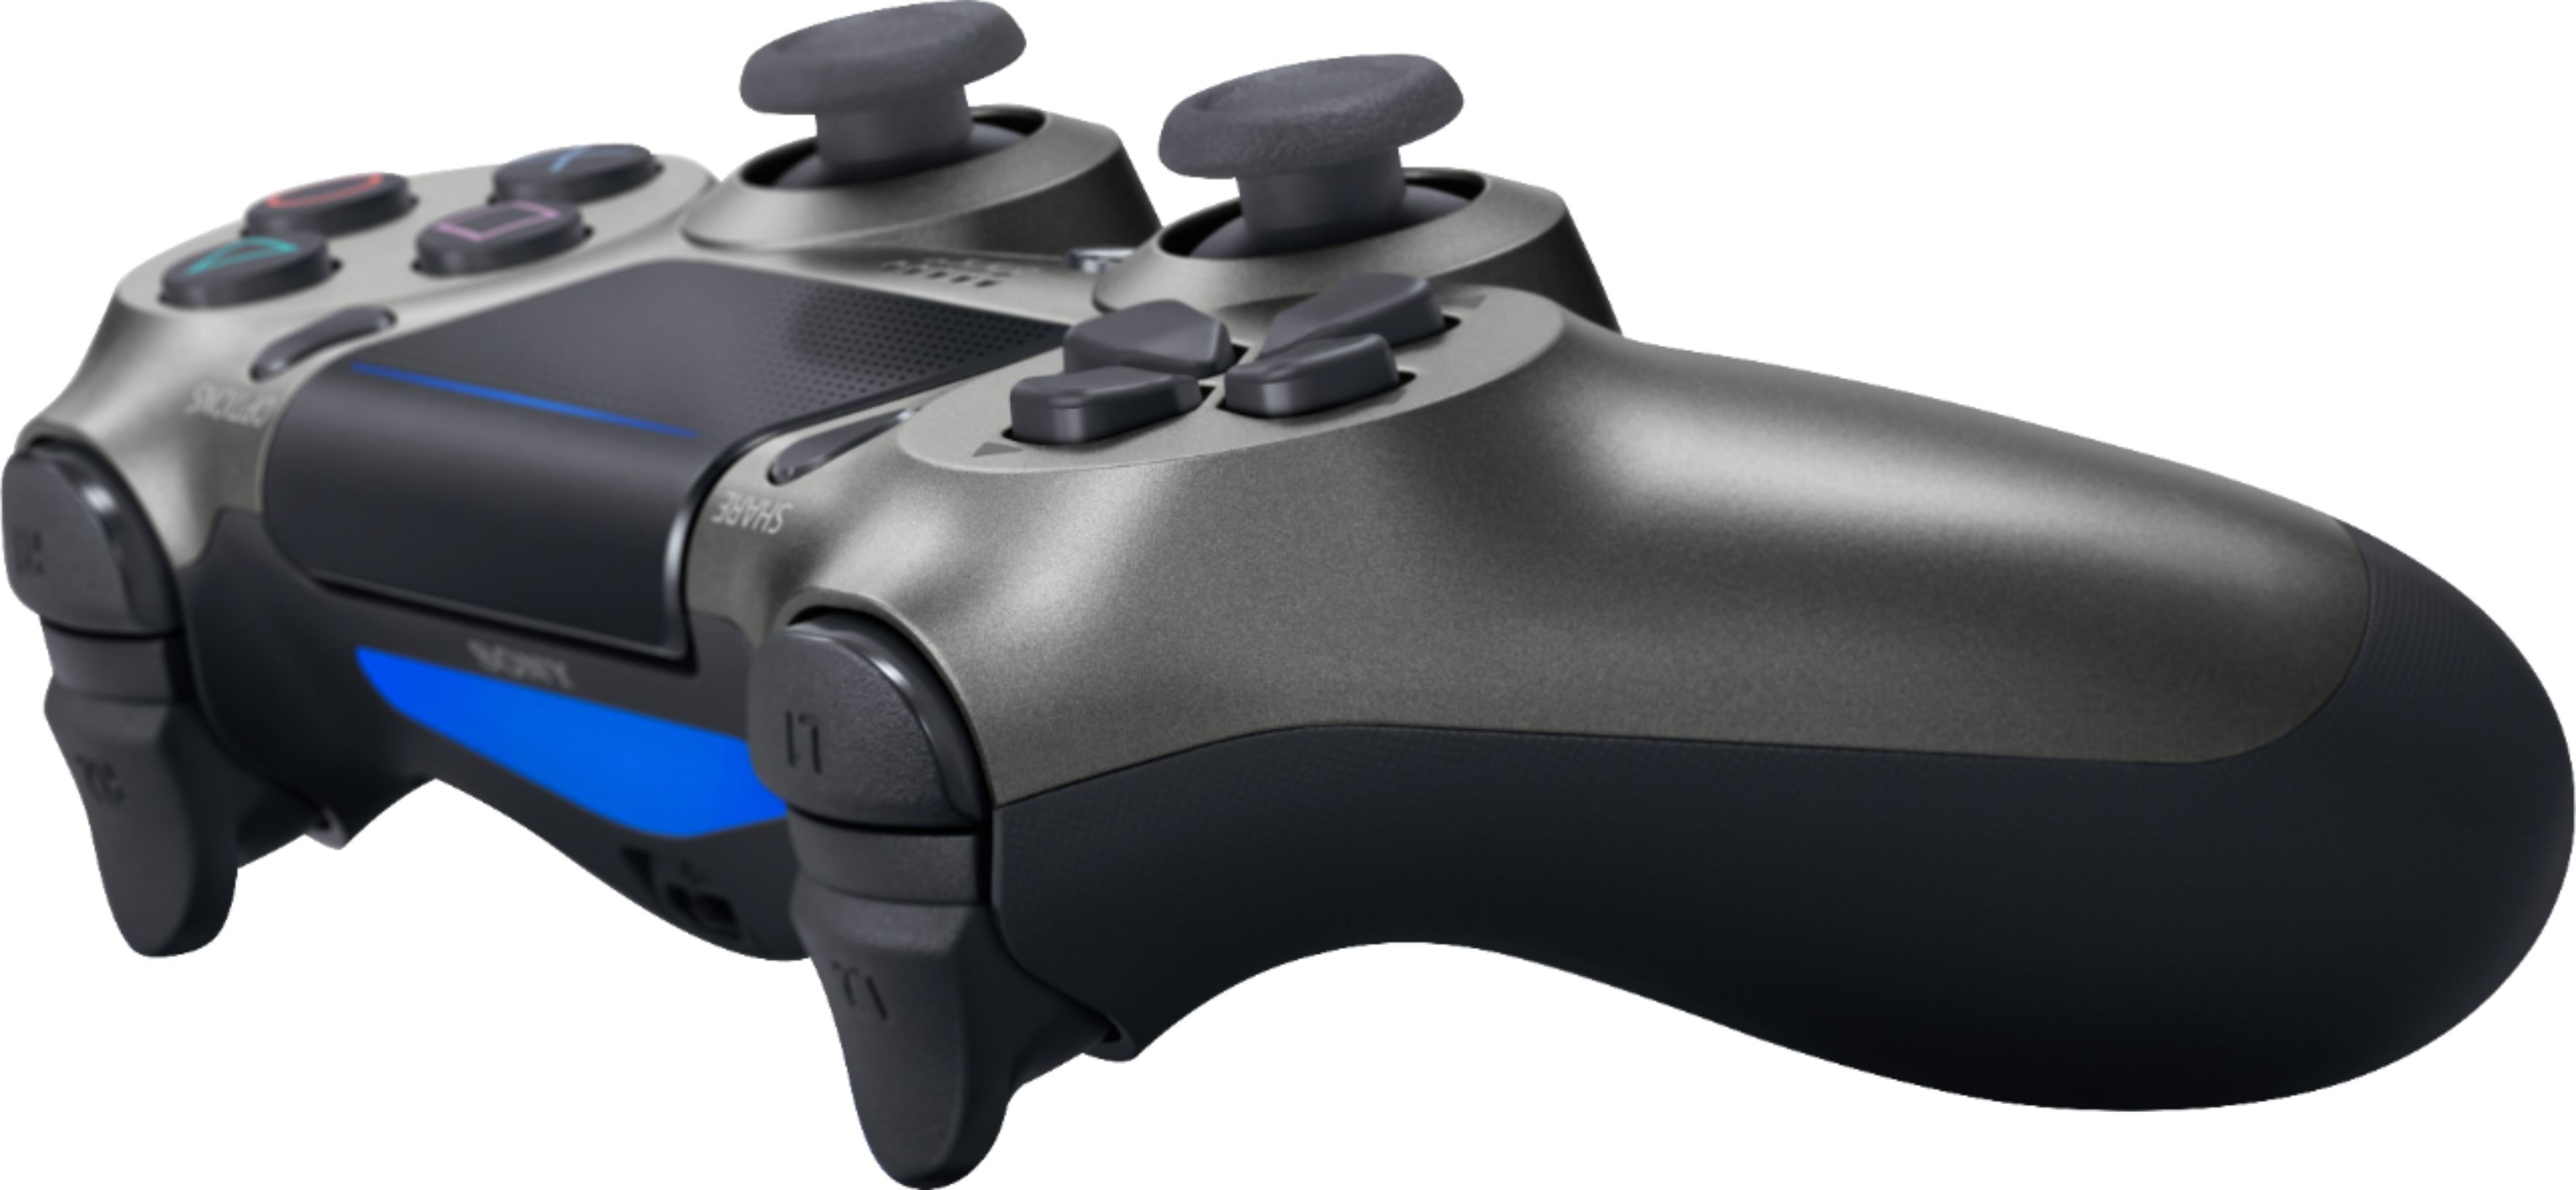 Sony DualShock 4 Controller Para PS4 PlayStation 4 Consola De